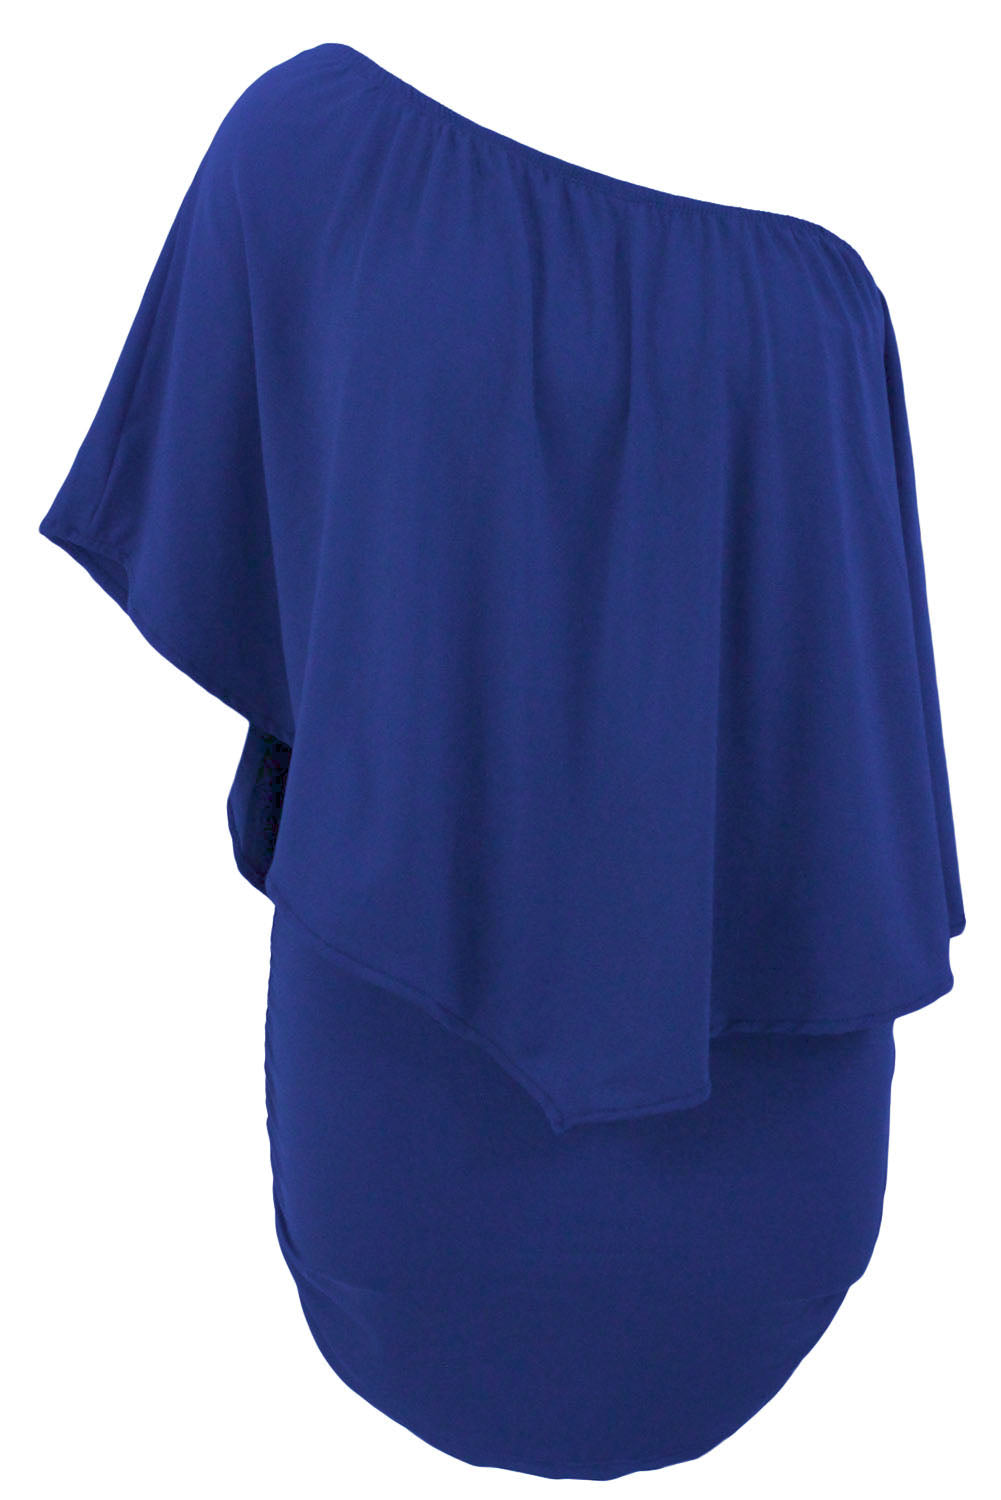 Robe mini poncho bleue superposée à plusieurs pansements